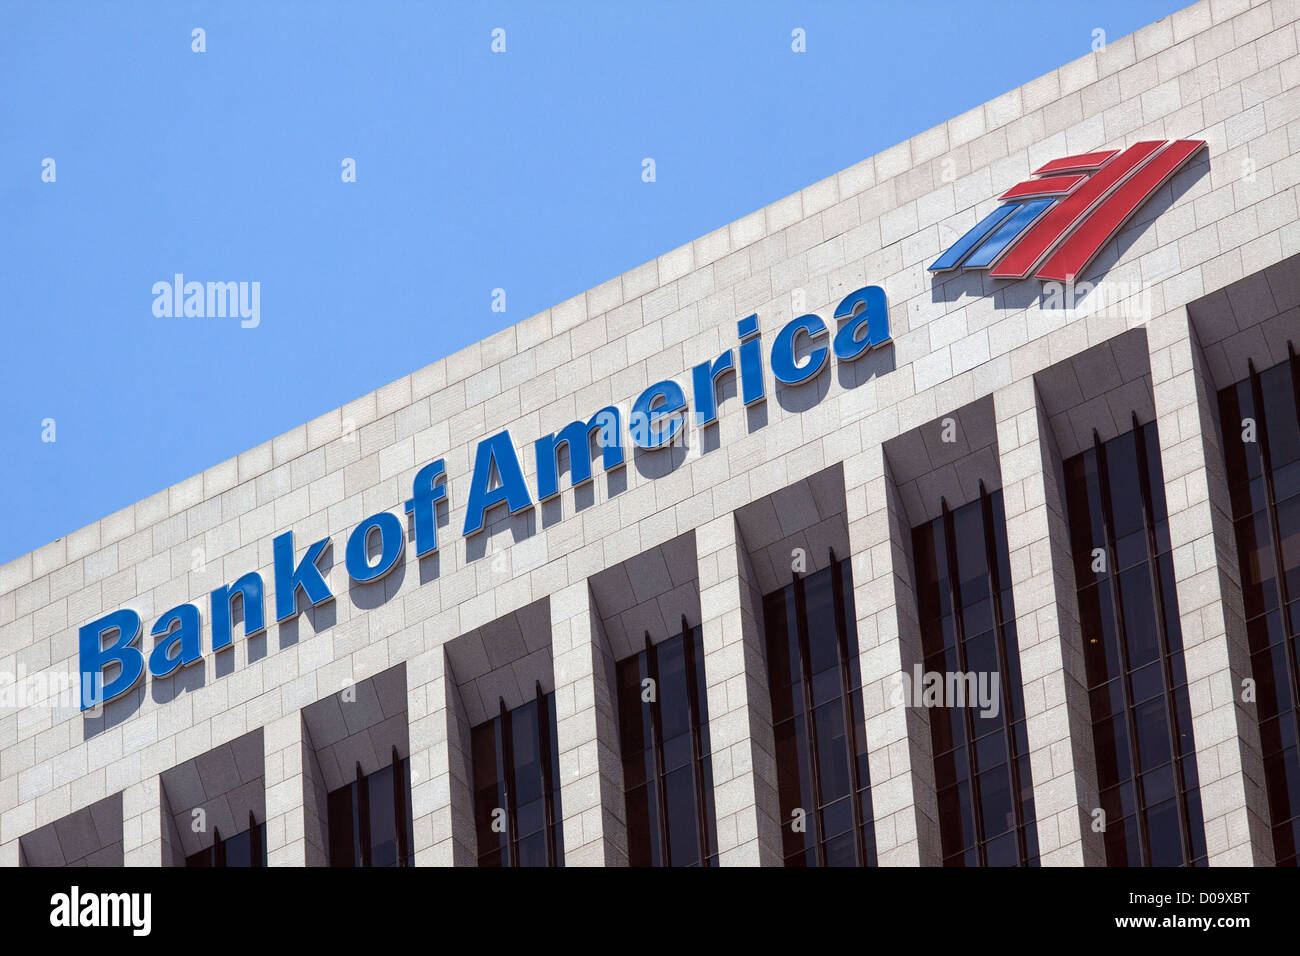 L.A. SITZ DER BANK OF AMERICA FINANZIELLEN BEZIRK VON LOS ANGELES KALIFORNIEN VEREINIGTE STAATEN VEREINIGTE STAATEN Stockfoto